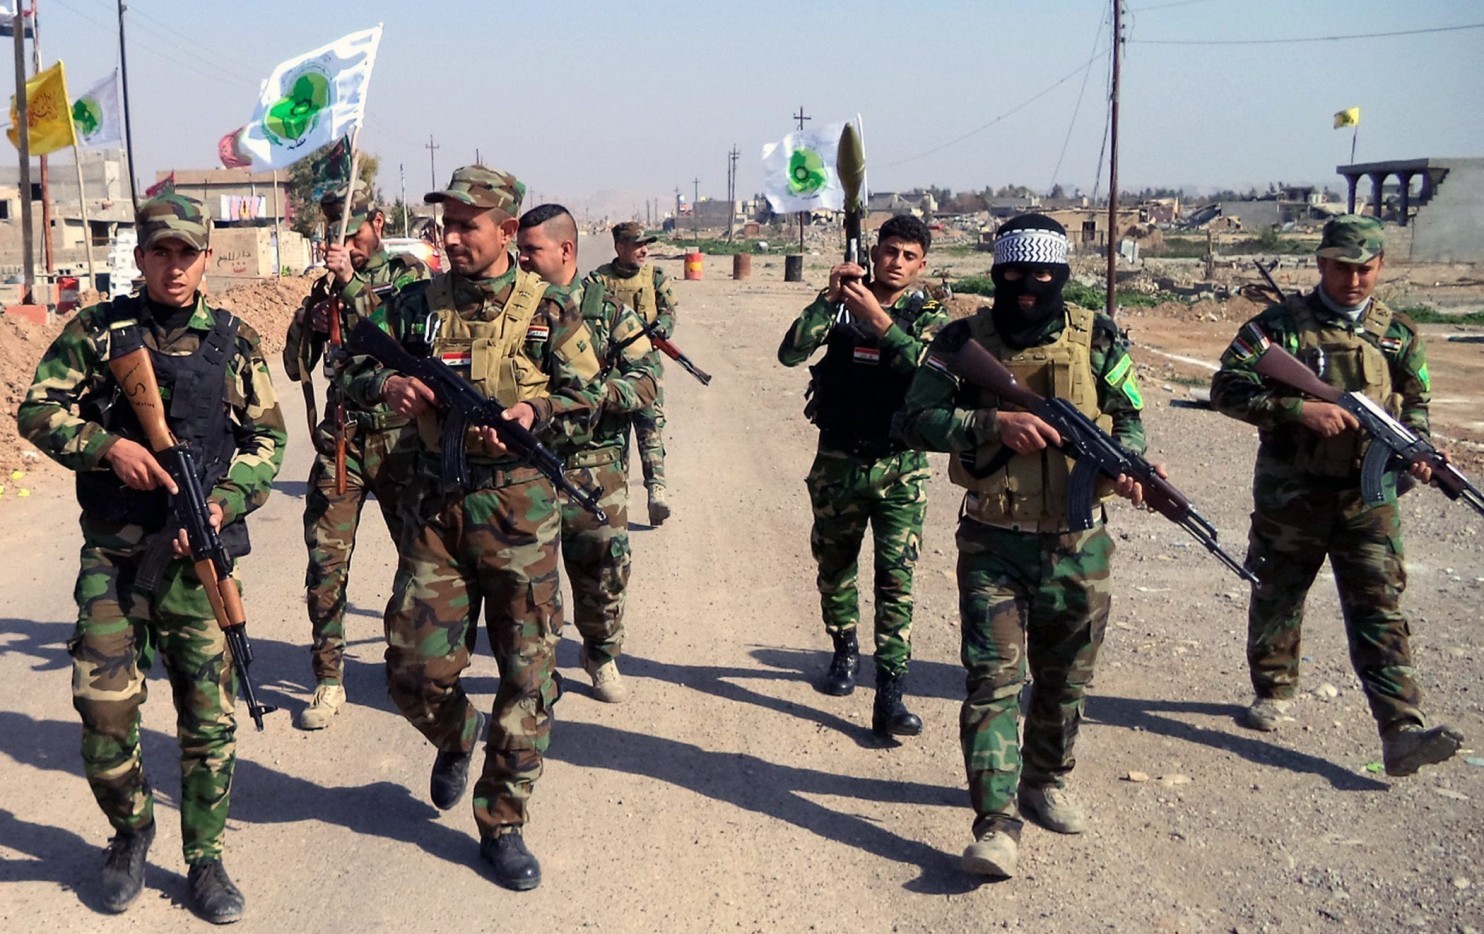 الميليشيات الشيعية العراقية الموالية لإيران مدججة بالسلاح